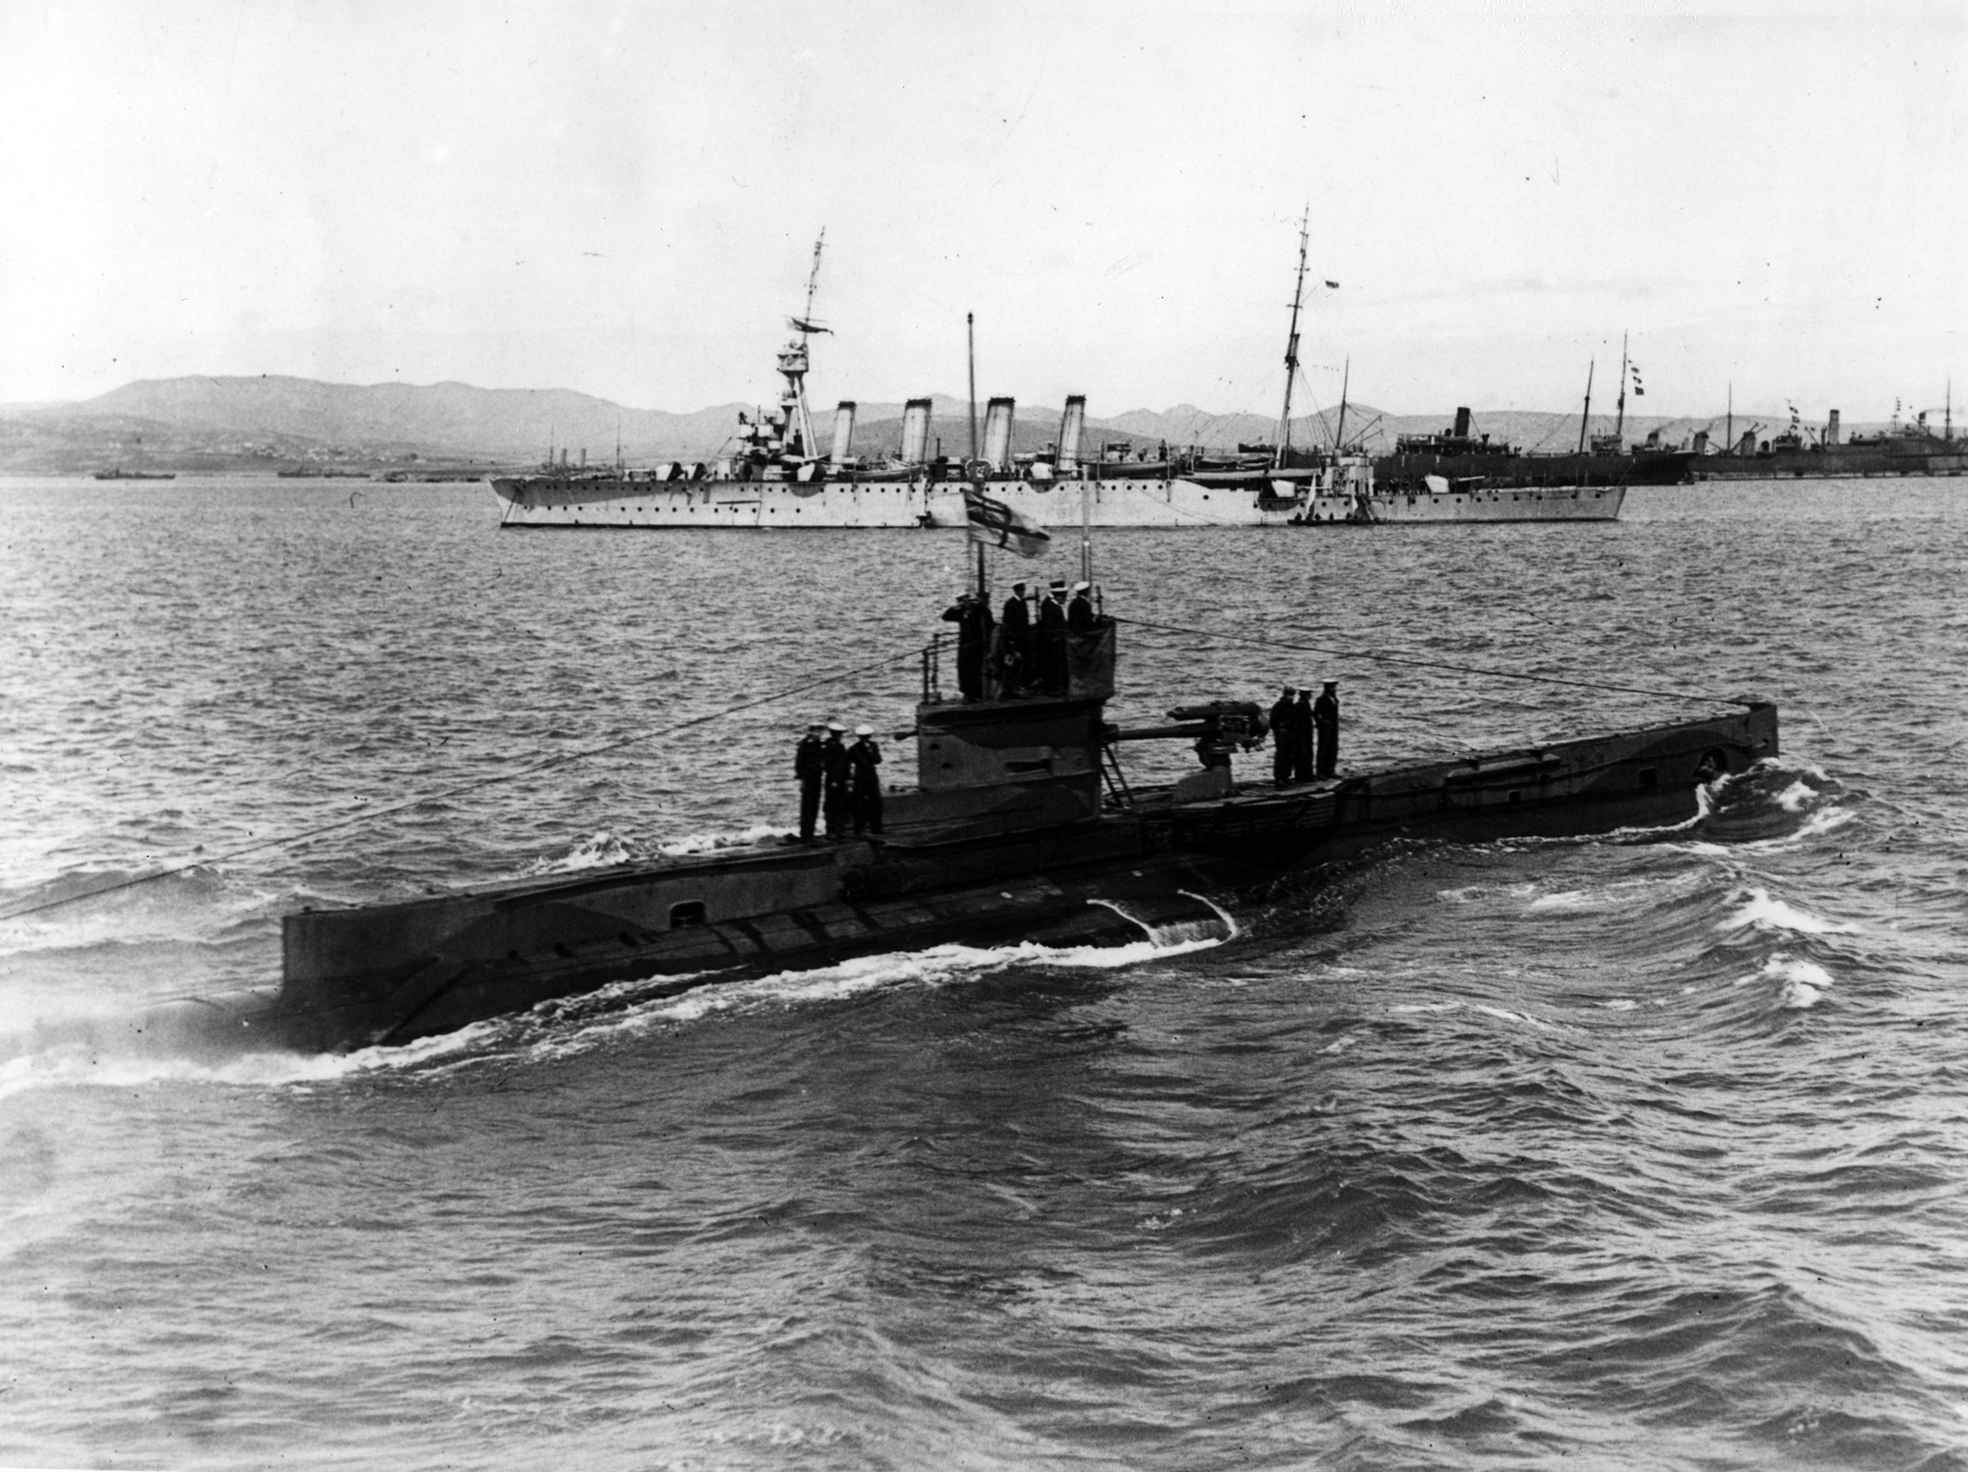 HM Submarine E11 the successor to E10.